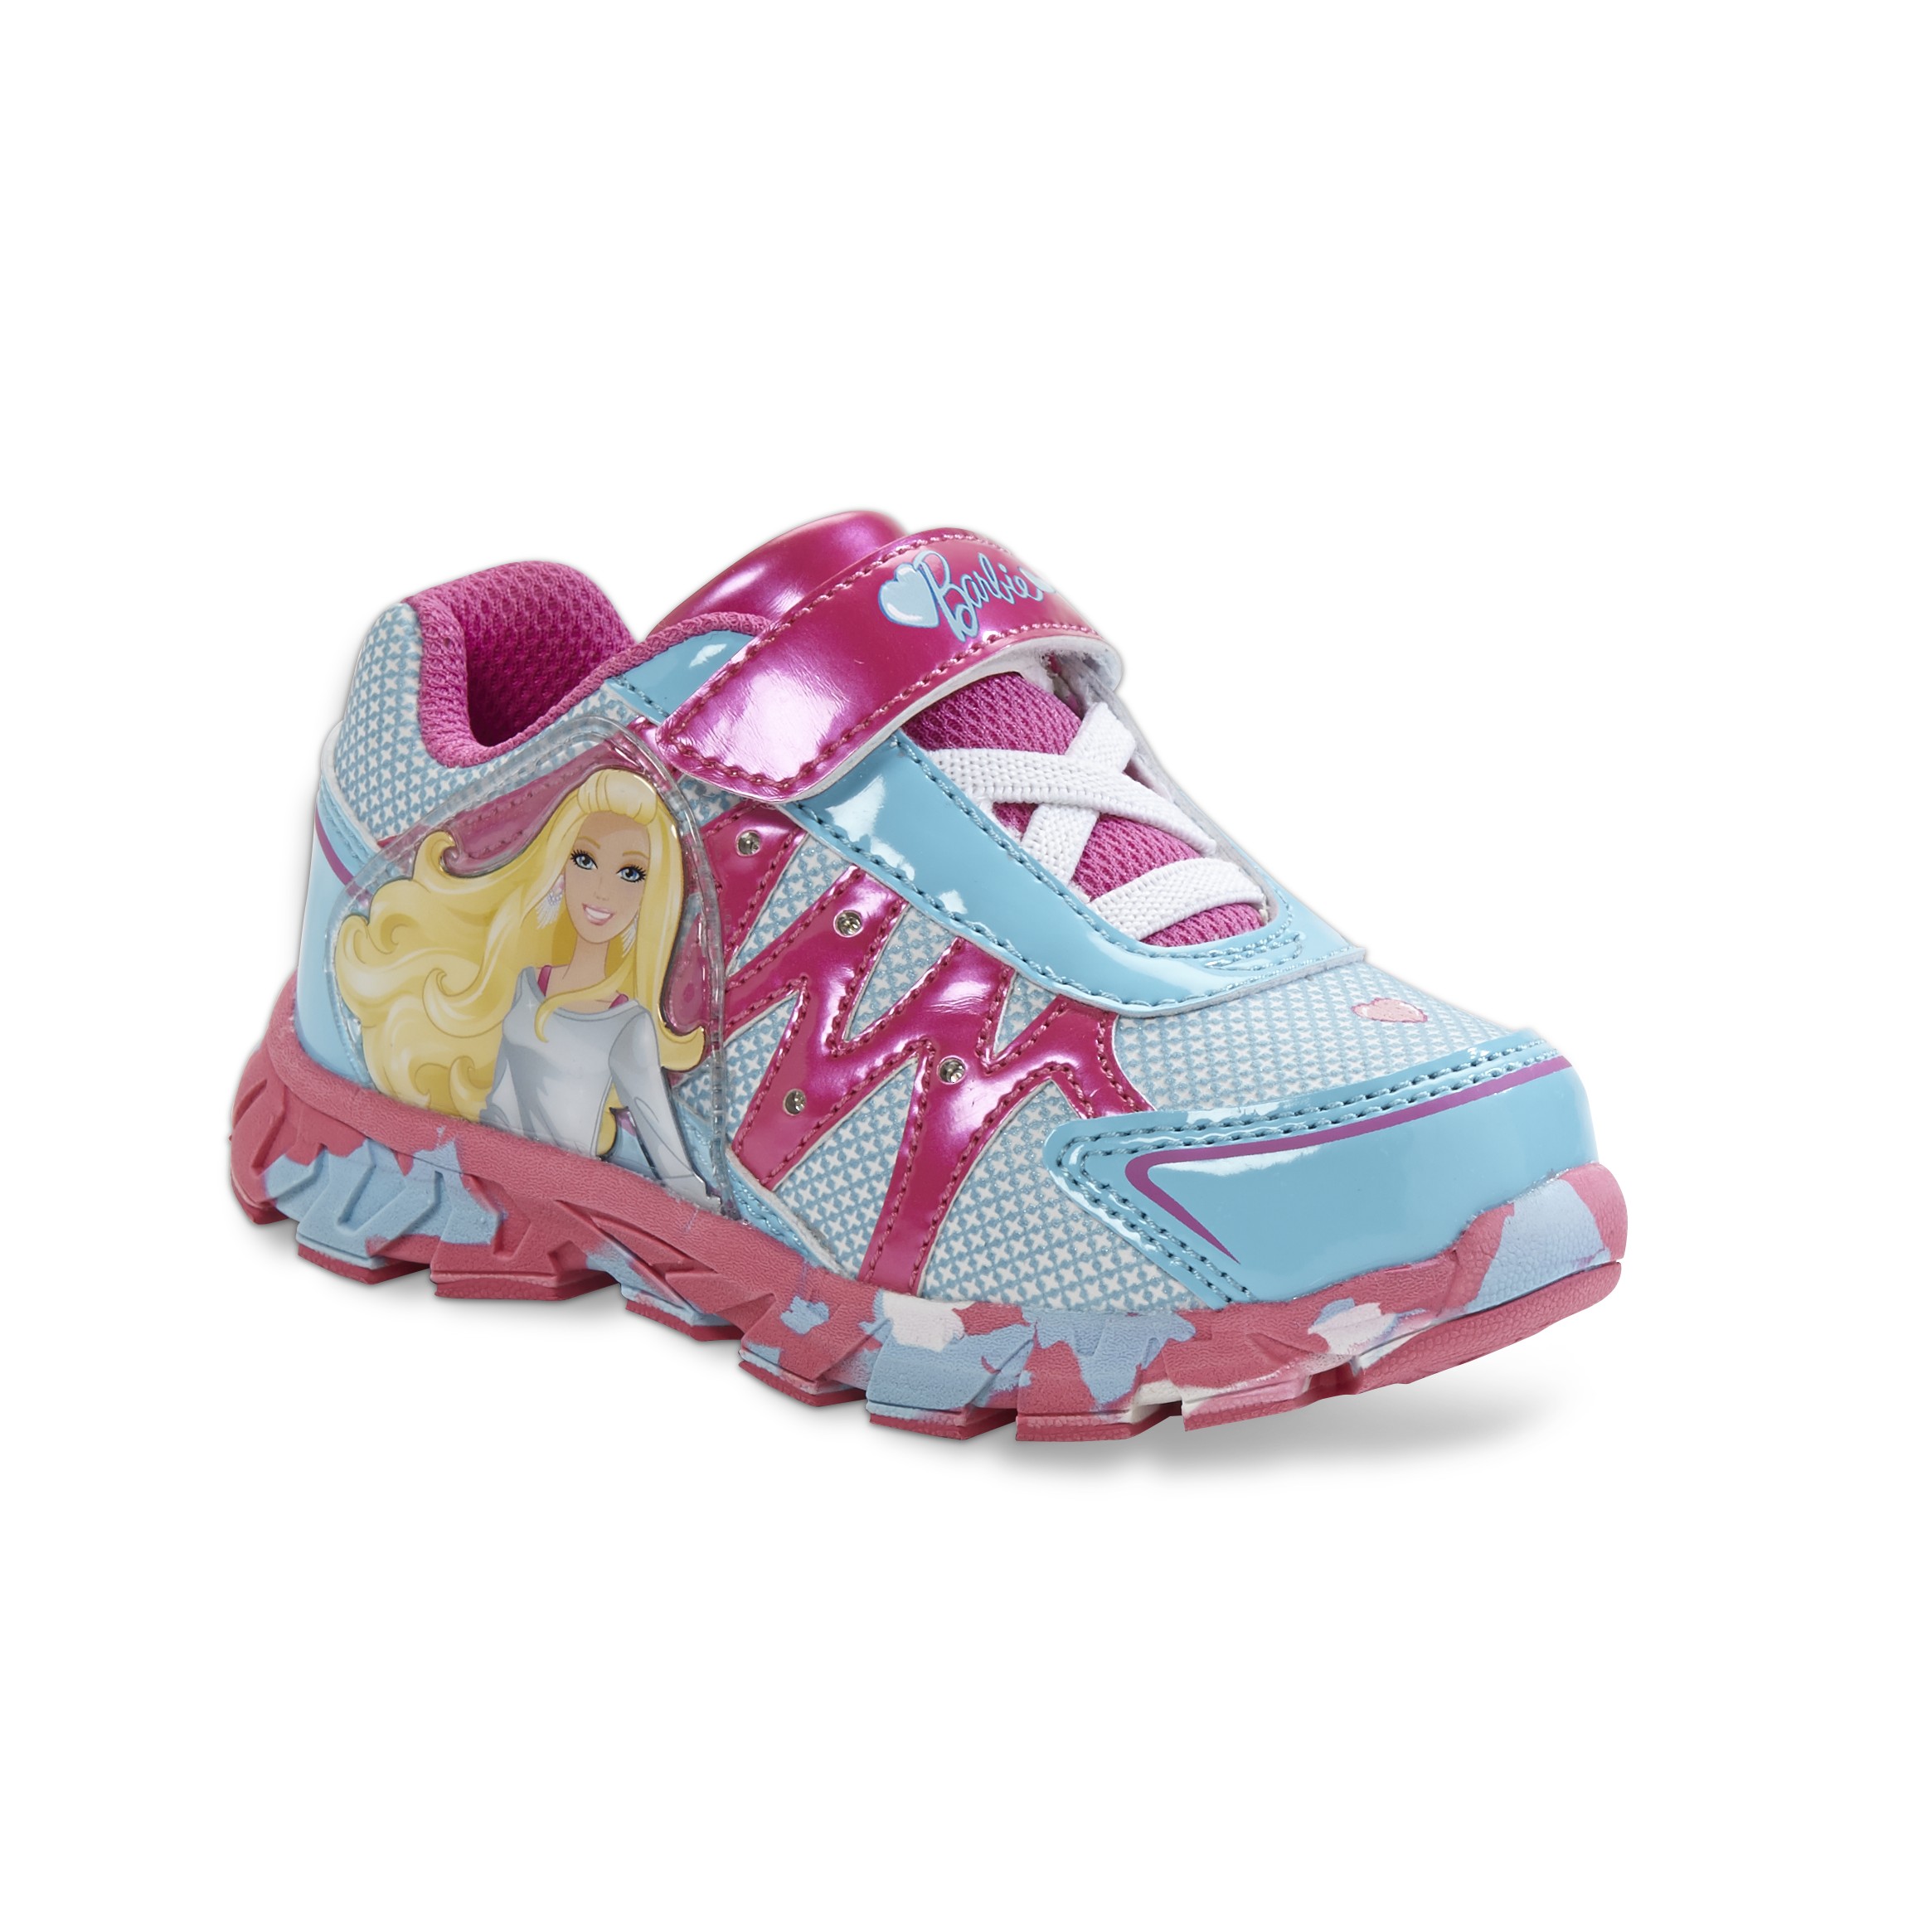 Barbie  Toddler Girl's Blue/Pink Light-Up Athletic Shoe